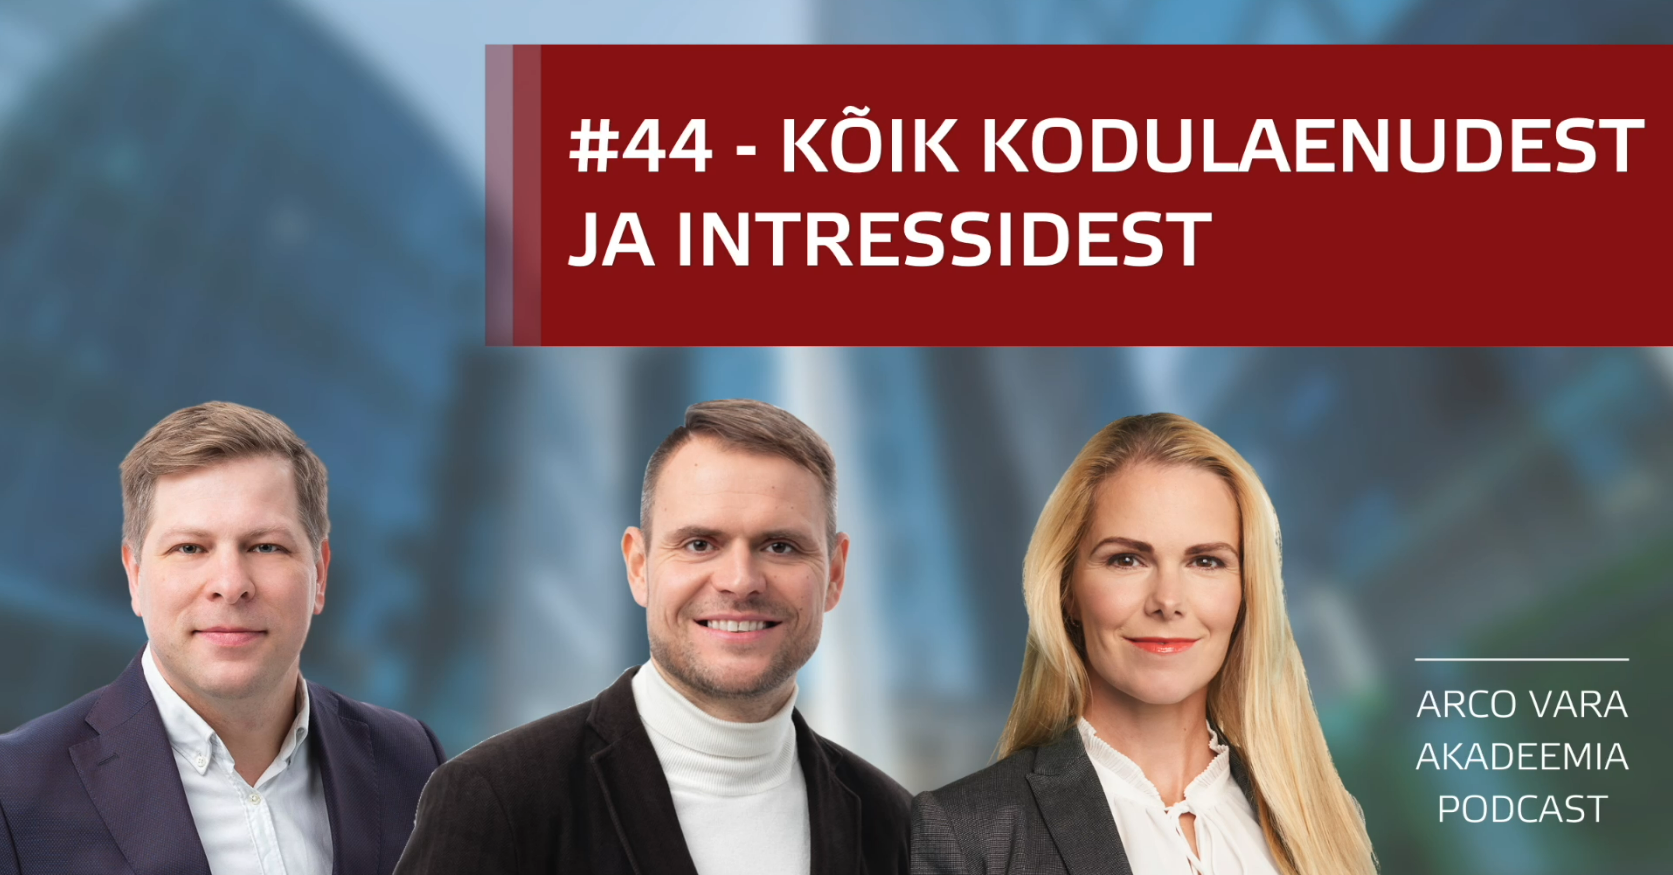 Podcast #44 - KÕIK KODULAENUDEST JA INTRESSIDEST!